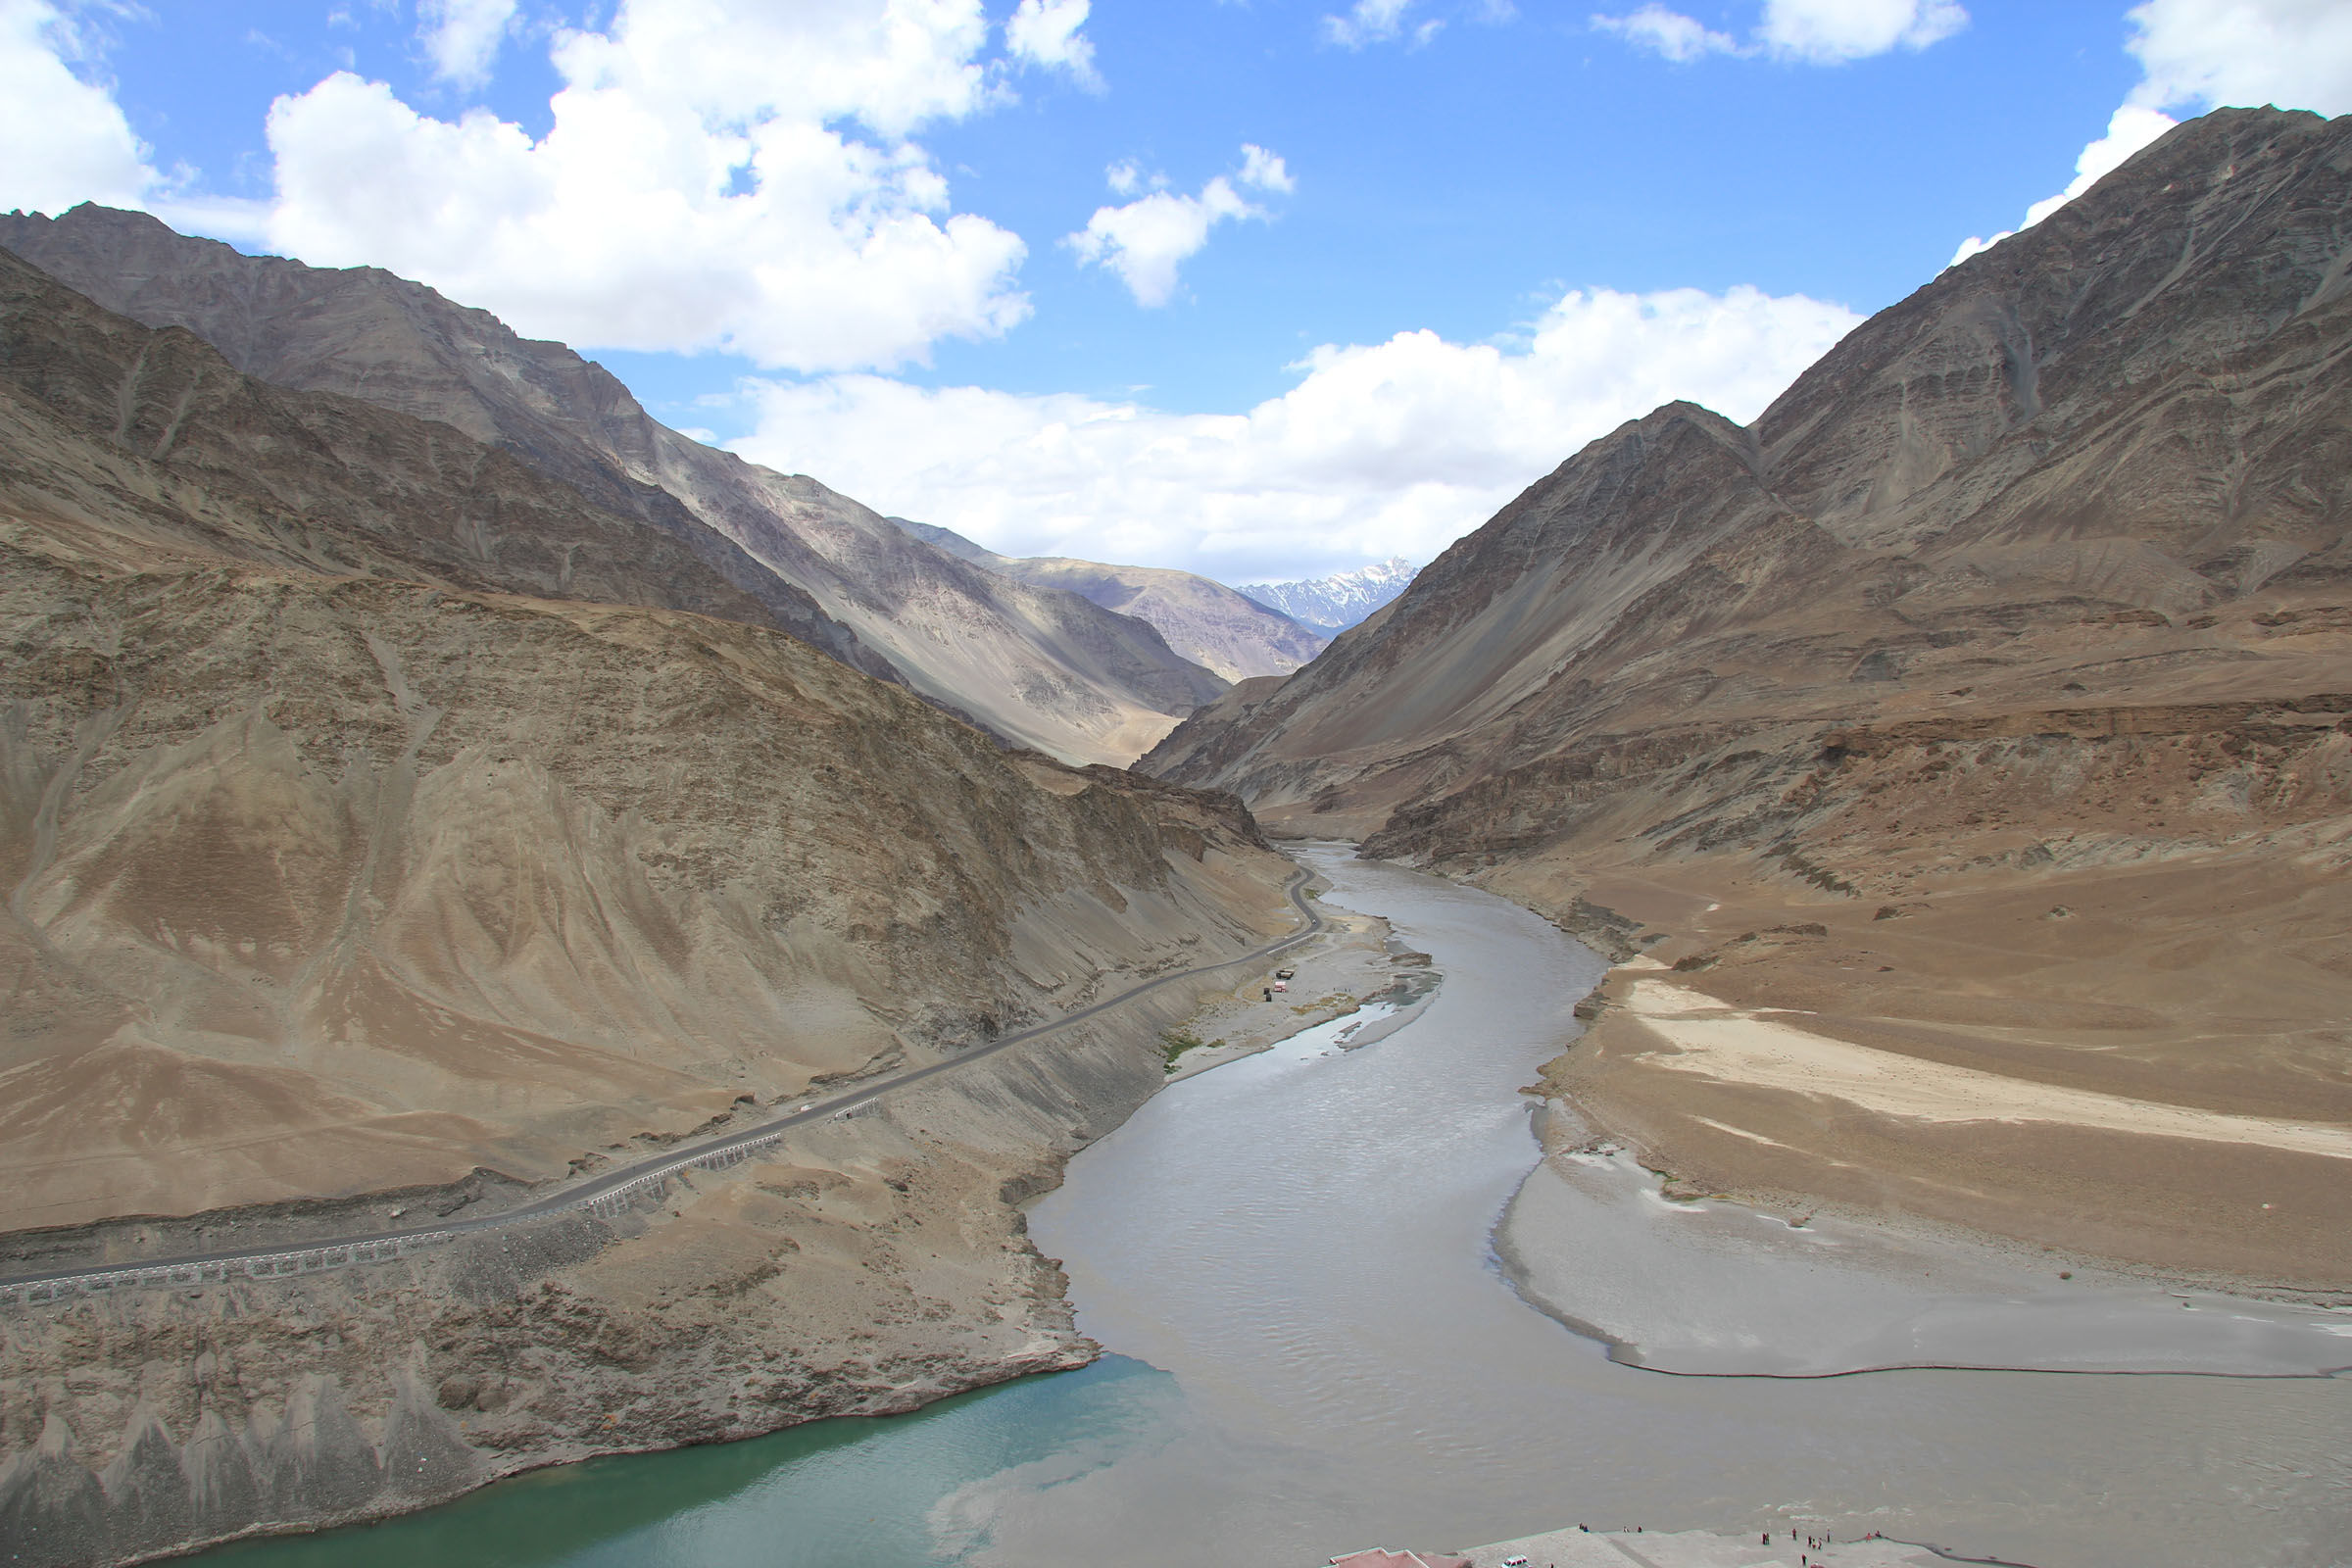 Rencontre du Zanskar et de l'Indus